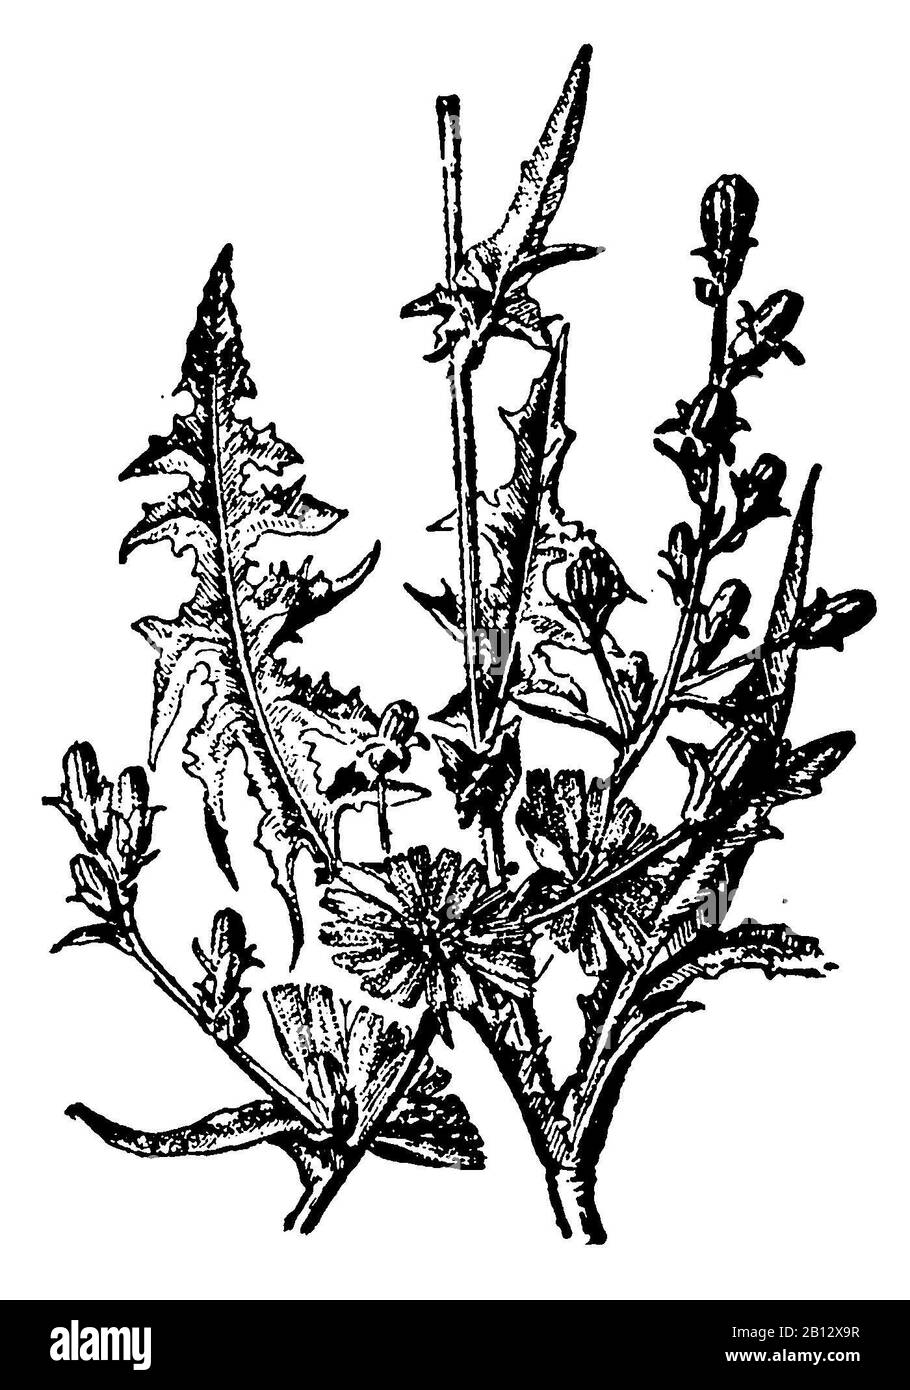 Common chicory, Cichorium intybus, Wegwarte, Chicorée sauvage ou Chicorée amère,  (encyclopedia, 1910) Stock Photo